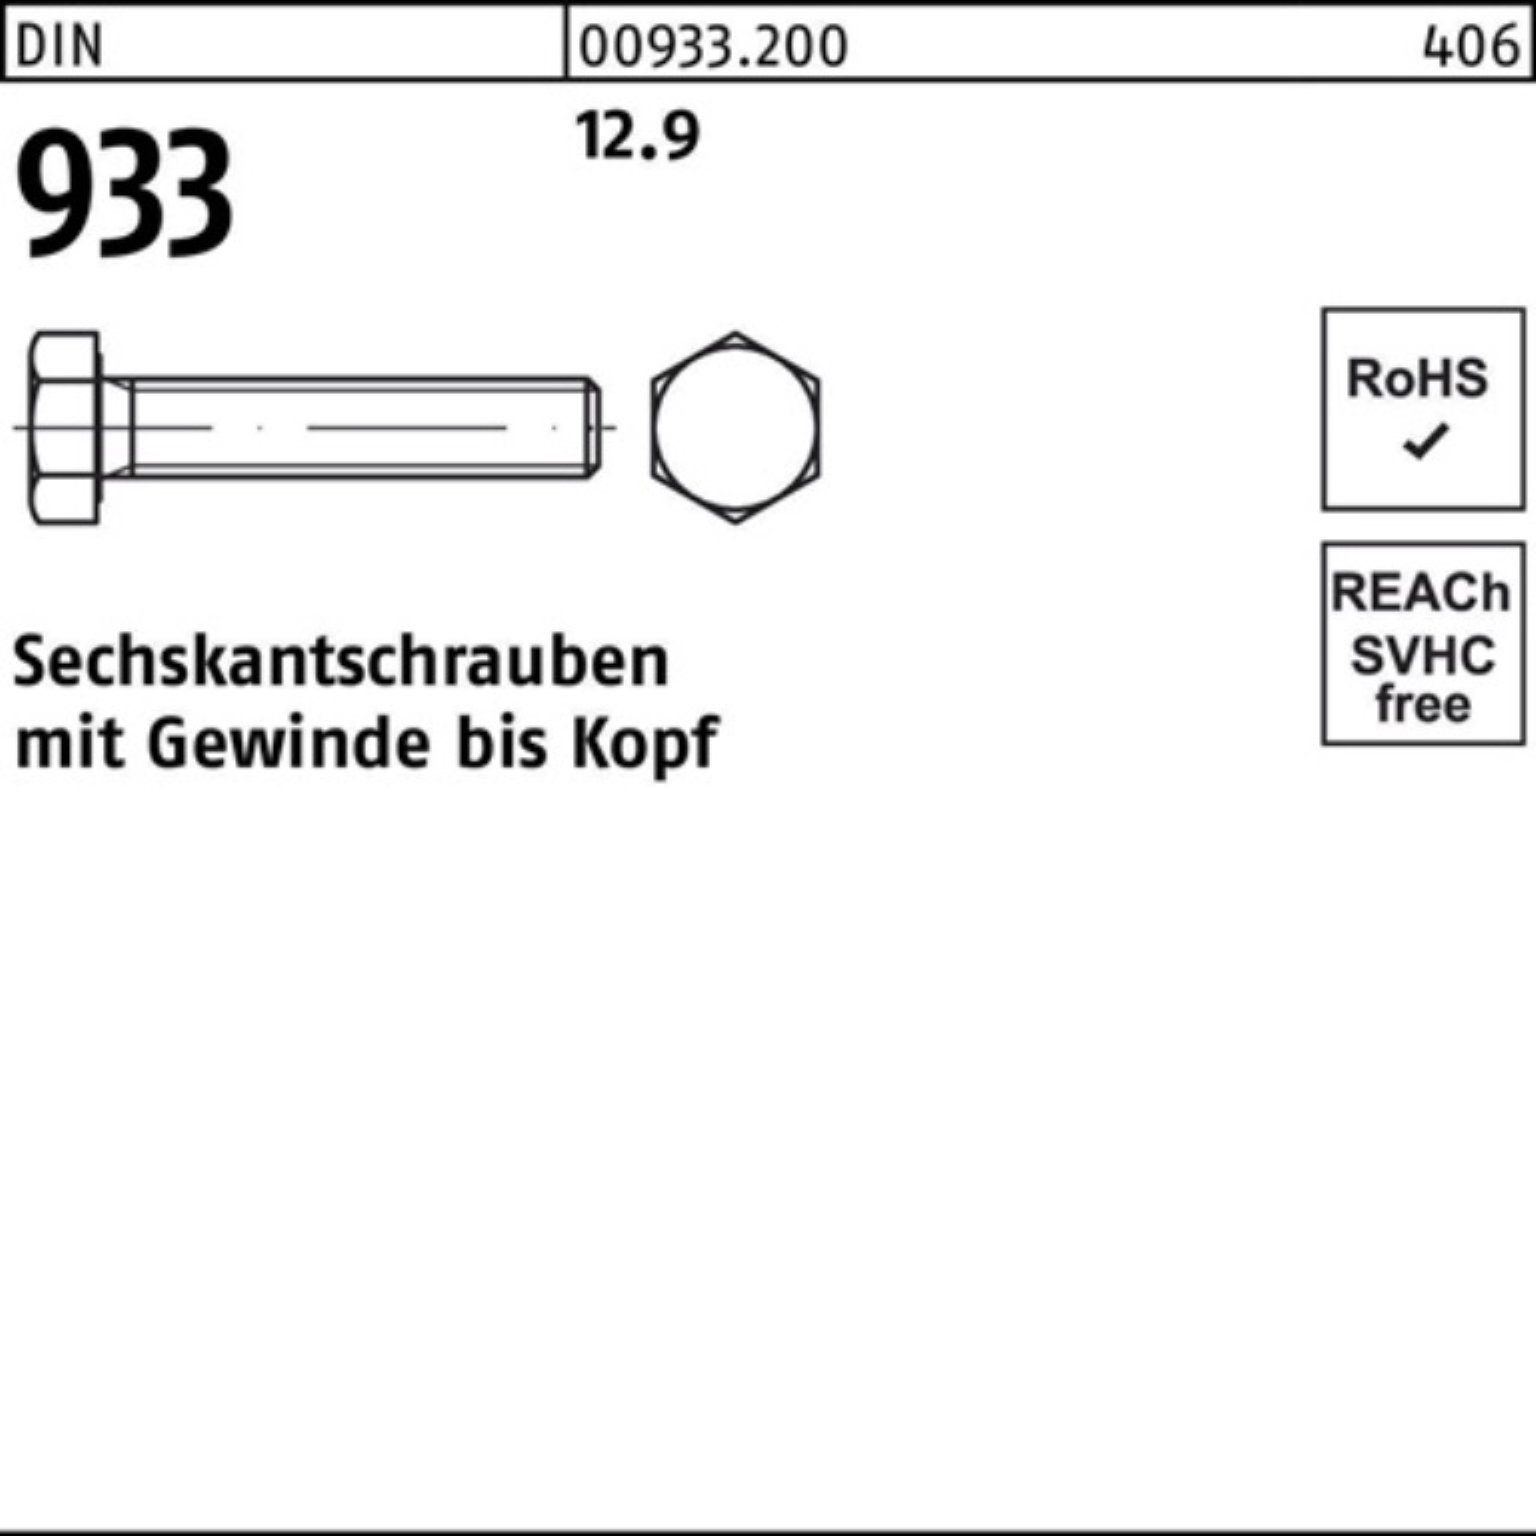 Reyher Sechskantschraube 200er Pack M8x 12.9 DIN Sechskantschraube Stück DIN 933 933 60 VG 200